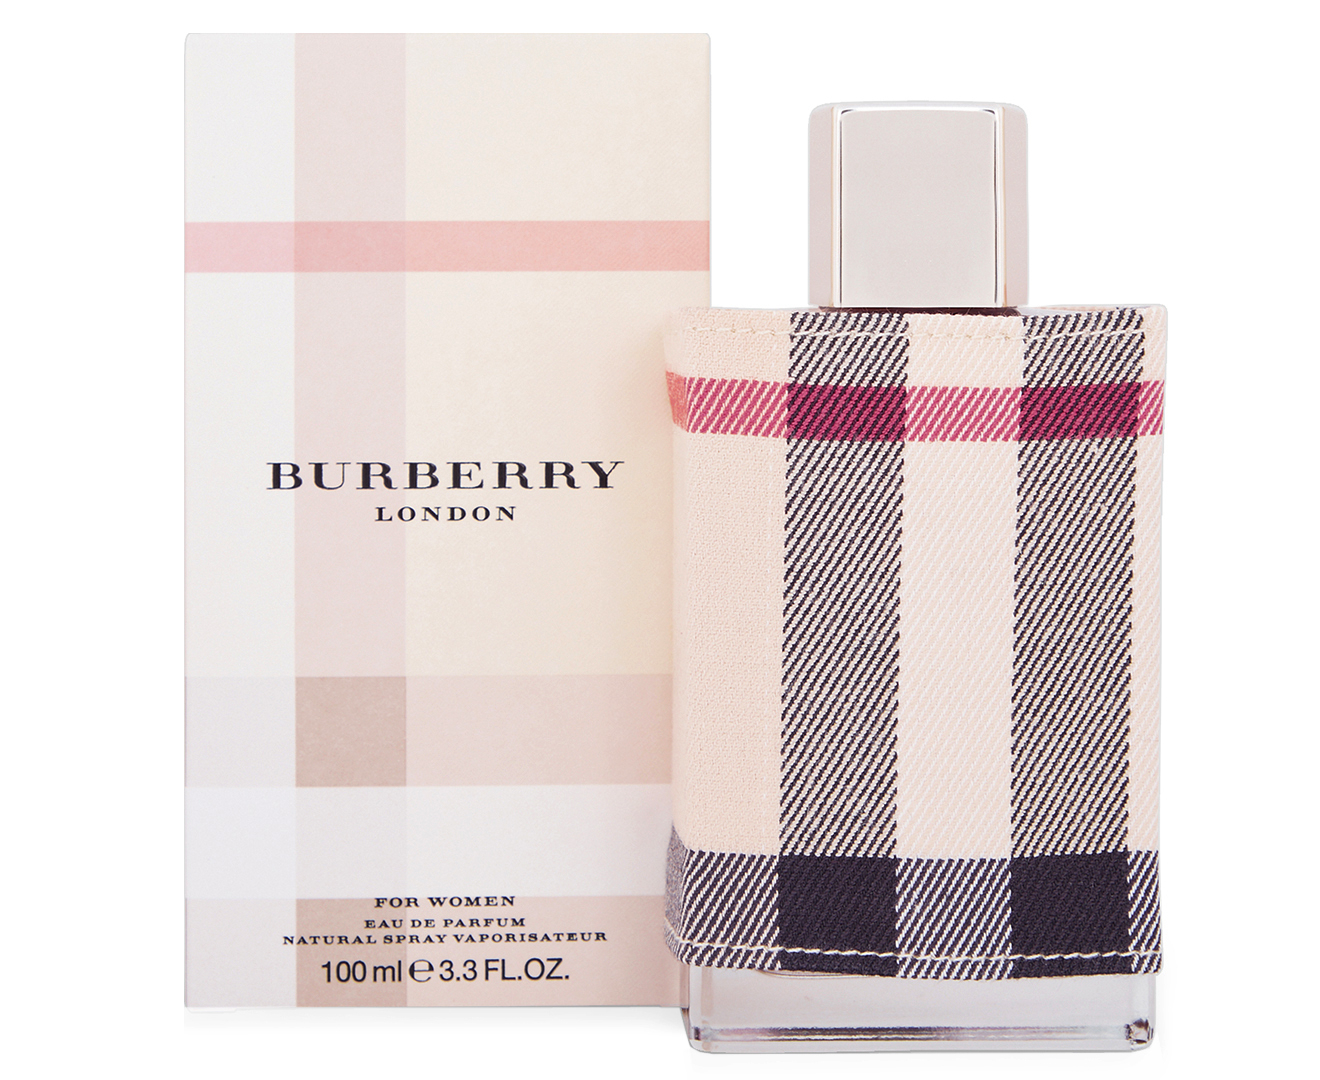 Actualizar 70+ imagen burberry london 100ml eau de parfum - Abzlocal.mx